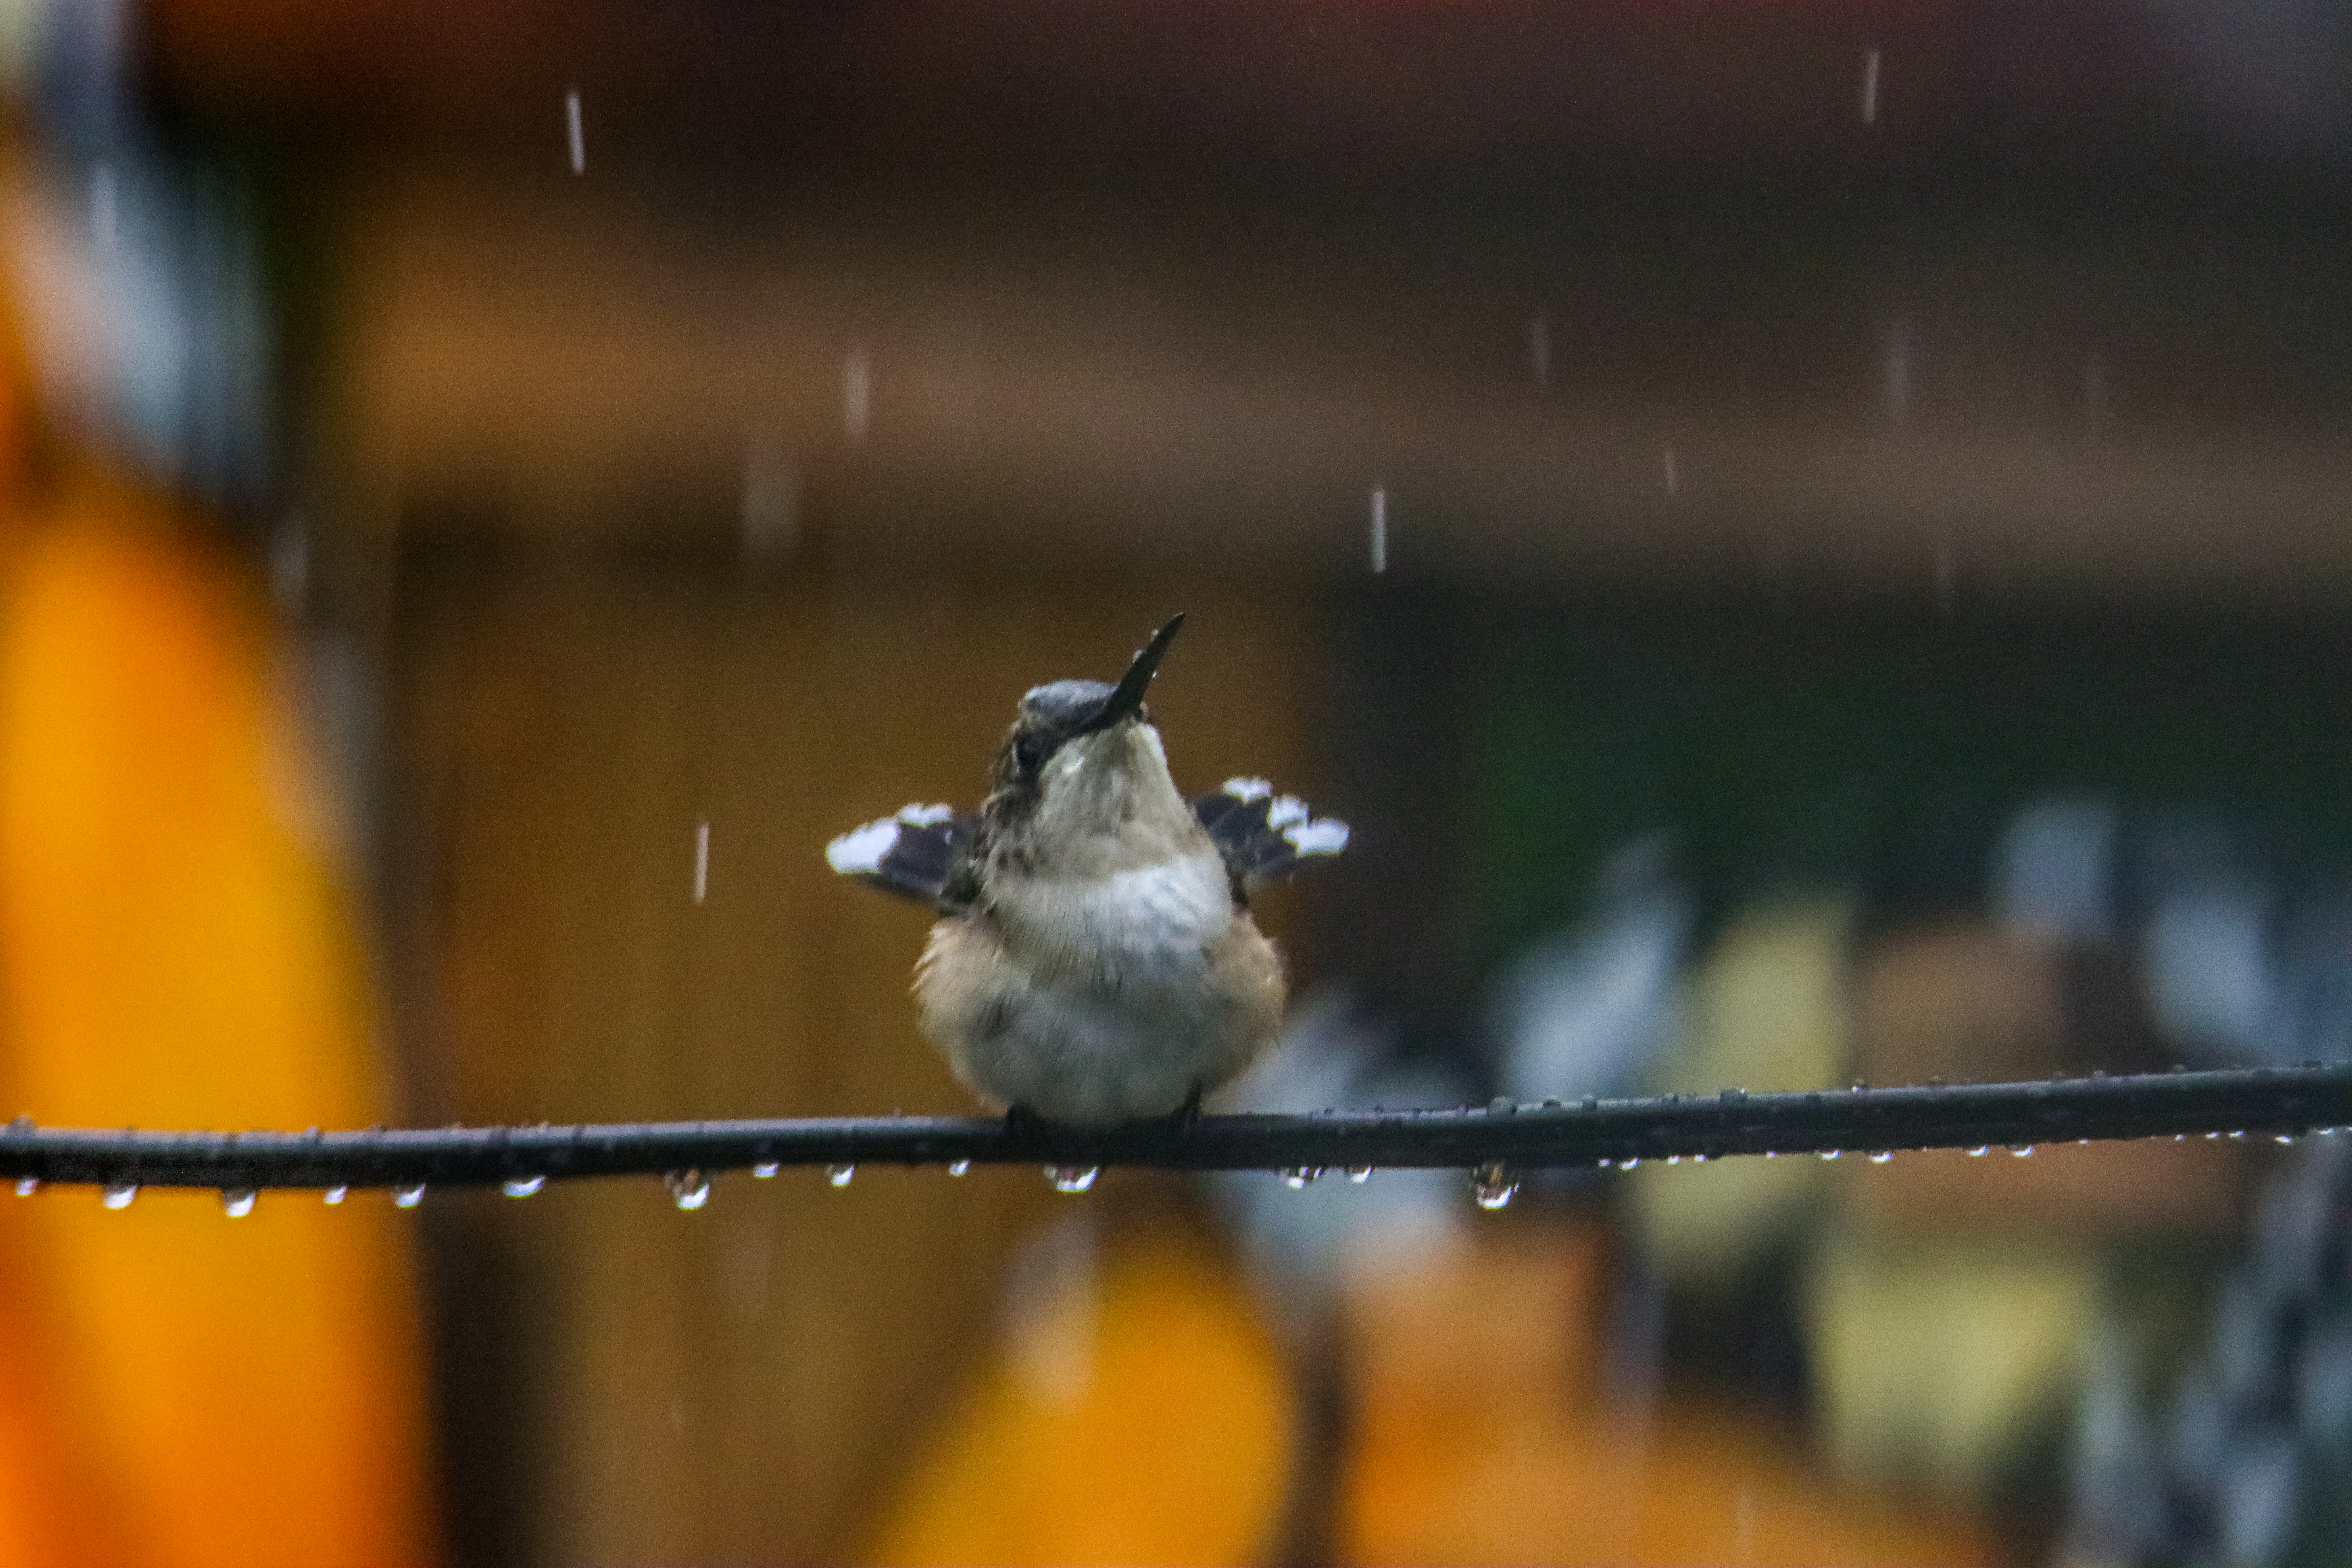 a-cute-little-hummingbird-bathing-in-the-rain-2022-09-15-22-26-17-utc.jpg